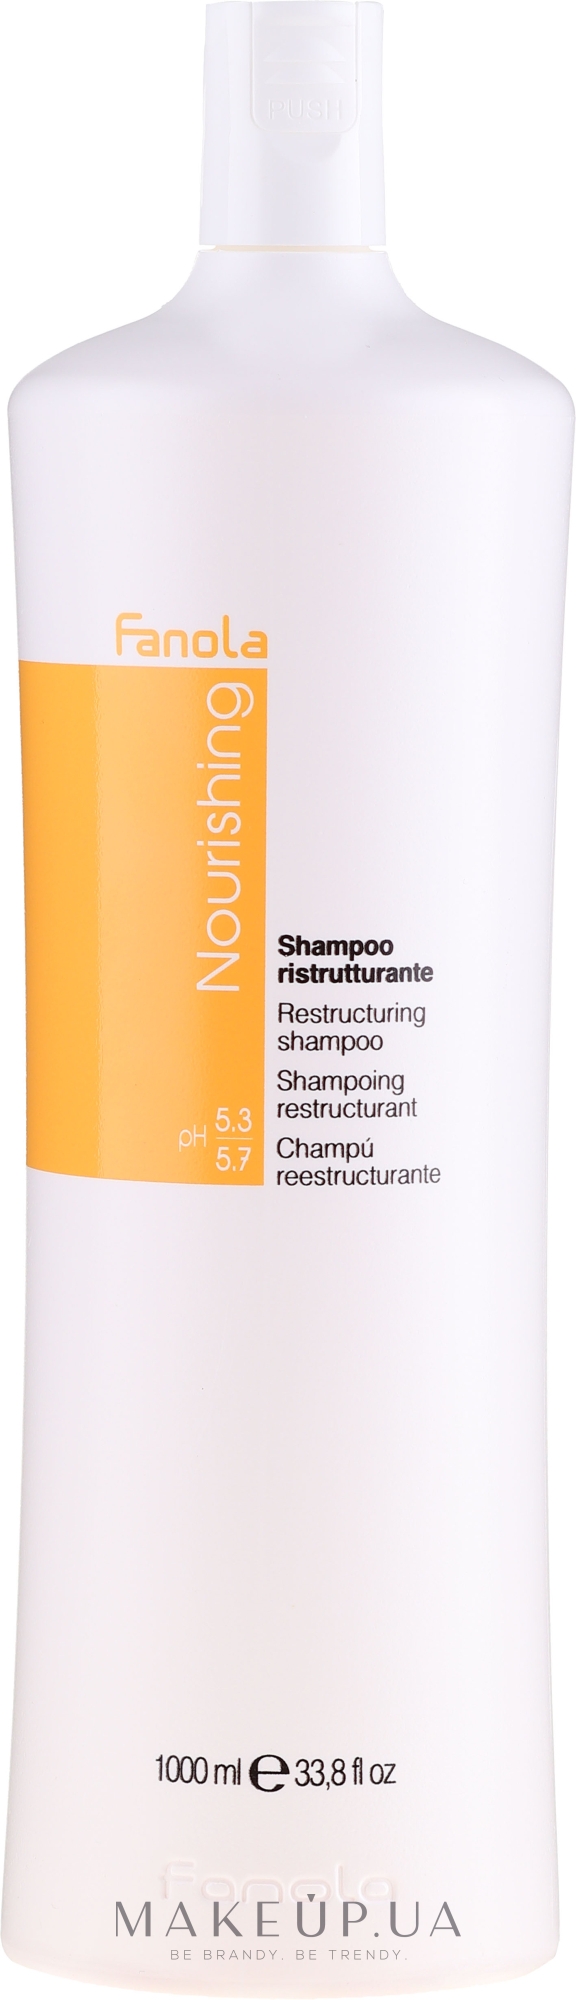 Реструктуризирующий шампунь для сухих волос - Fanola Nutry Care Restructuring Shampoo — фото 1000ml